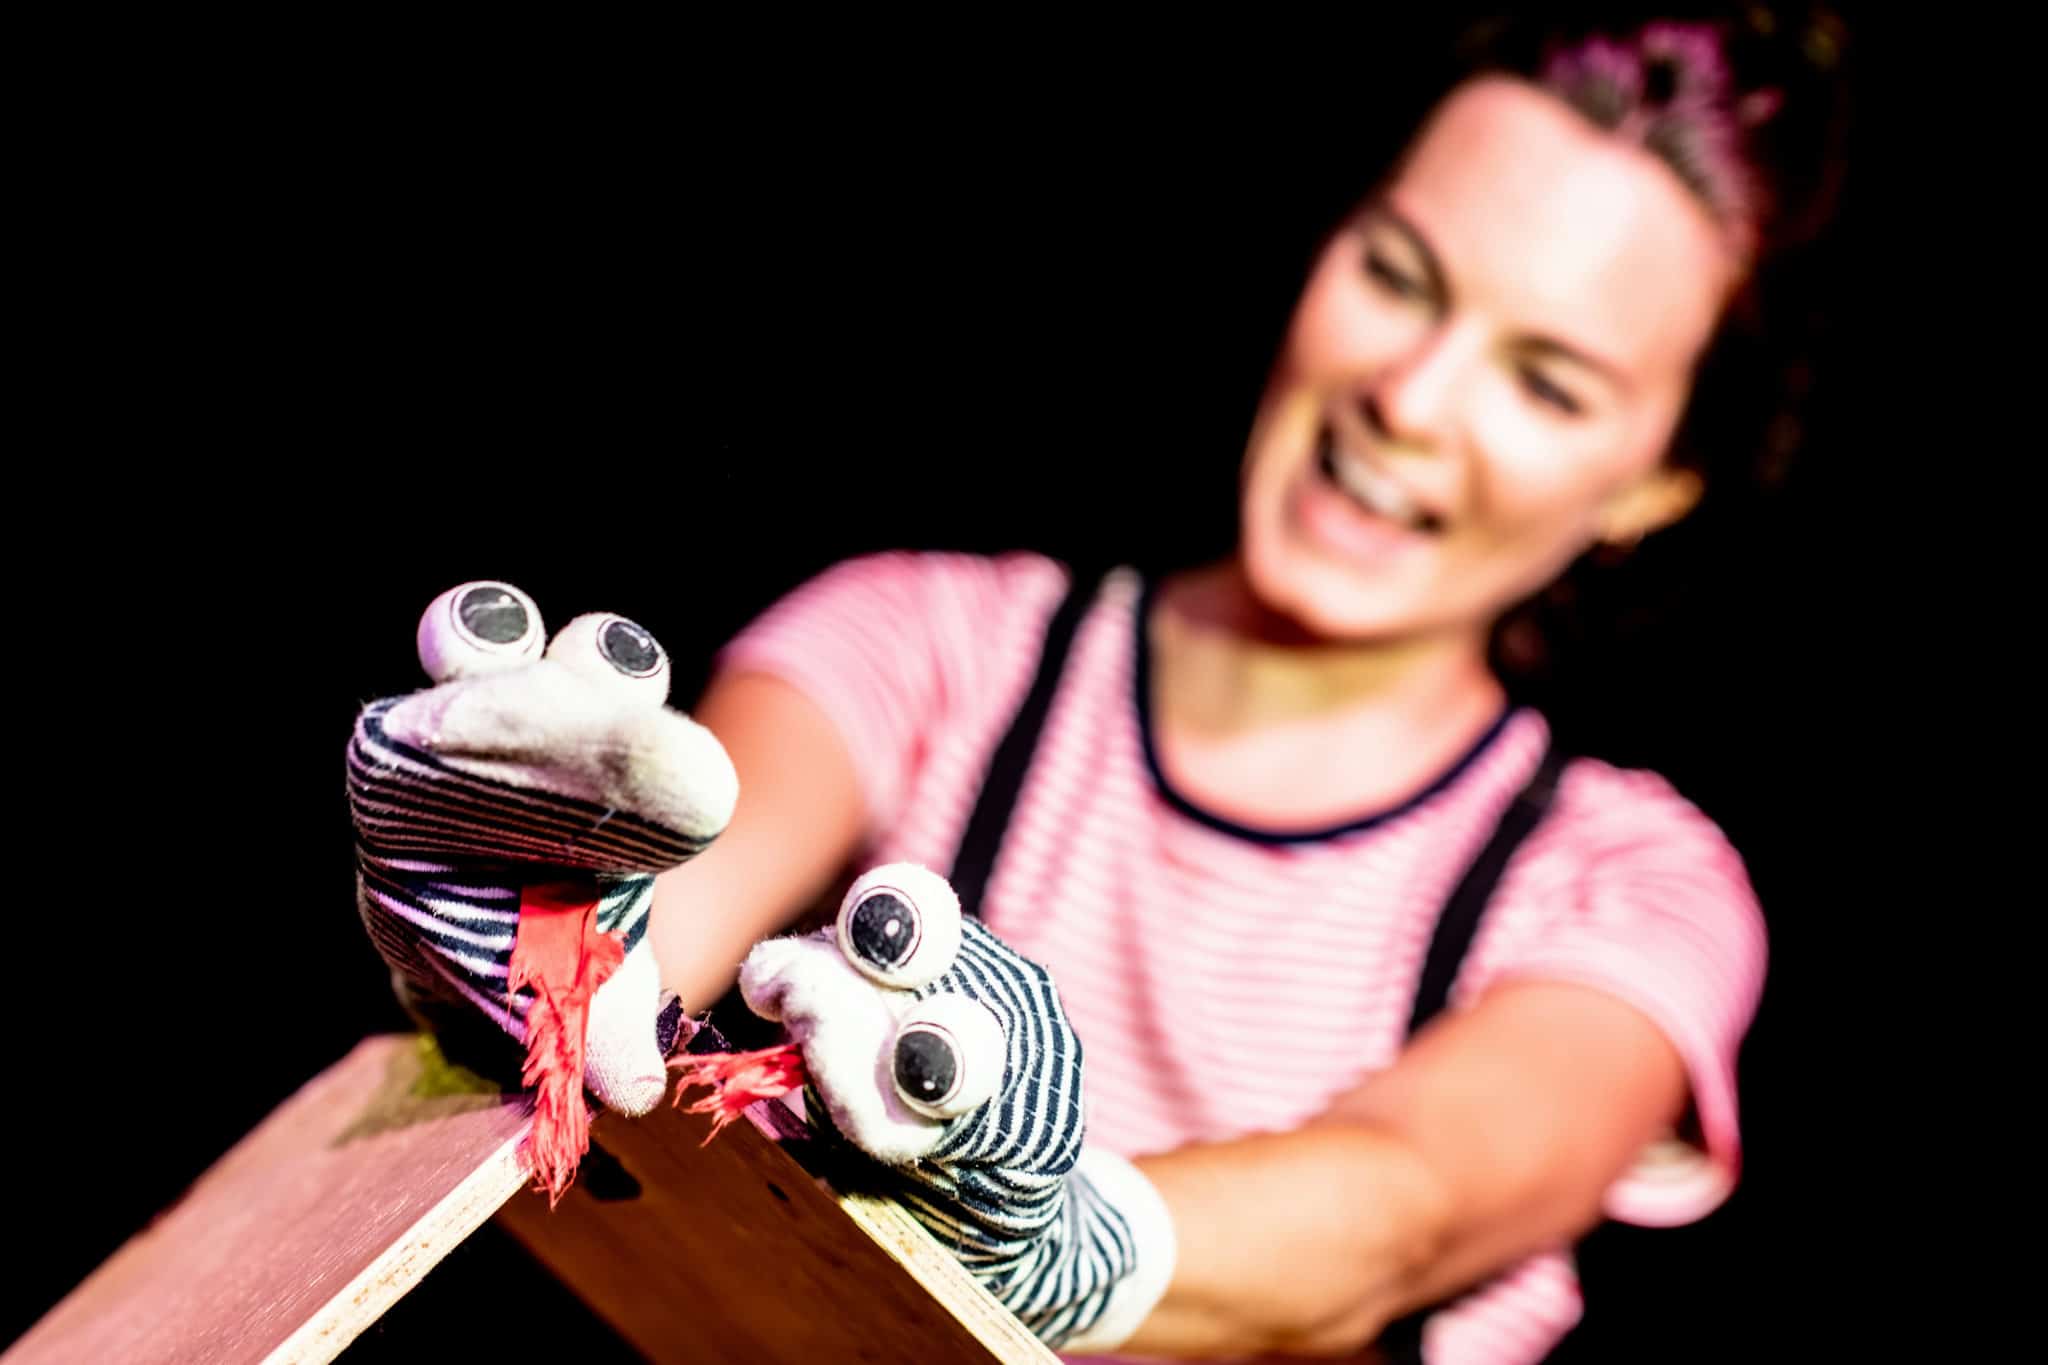 Fotografi: Bildet viser en kvinne som spiller dukketeater. Dukkene er på hånden hennes og skal forestille to slanger med geipende, rød tunge.